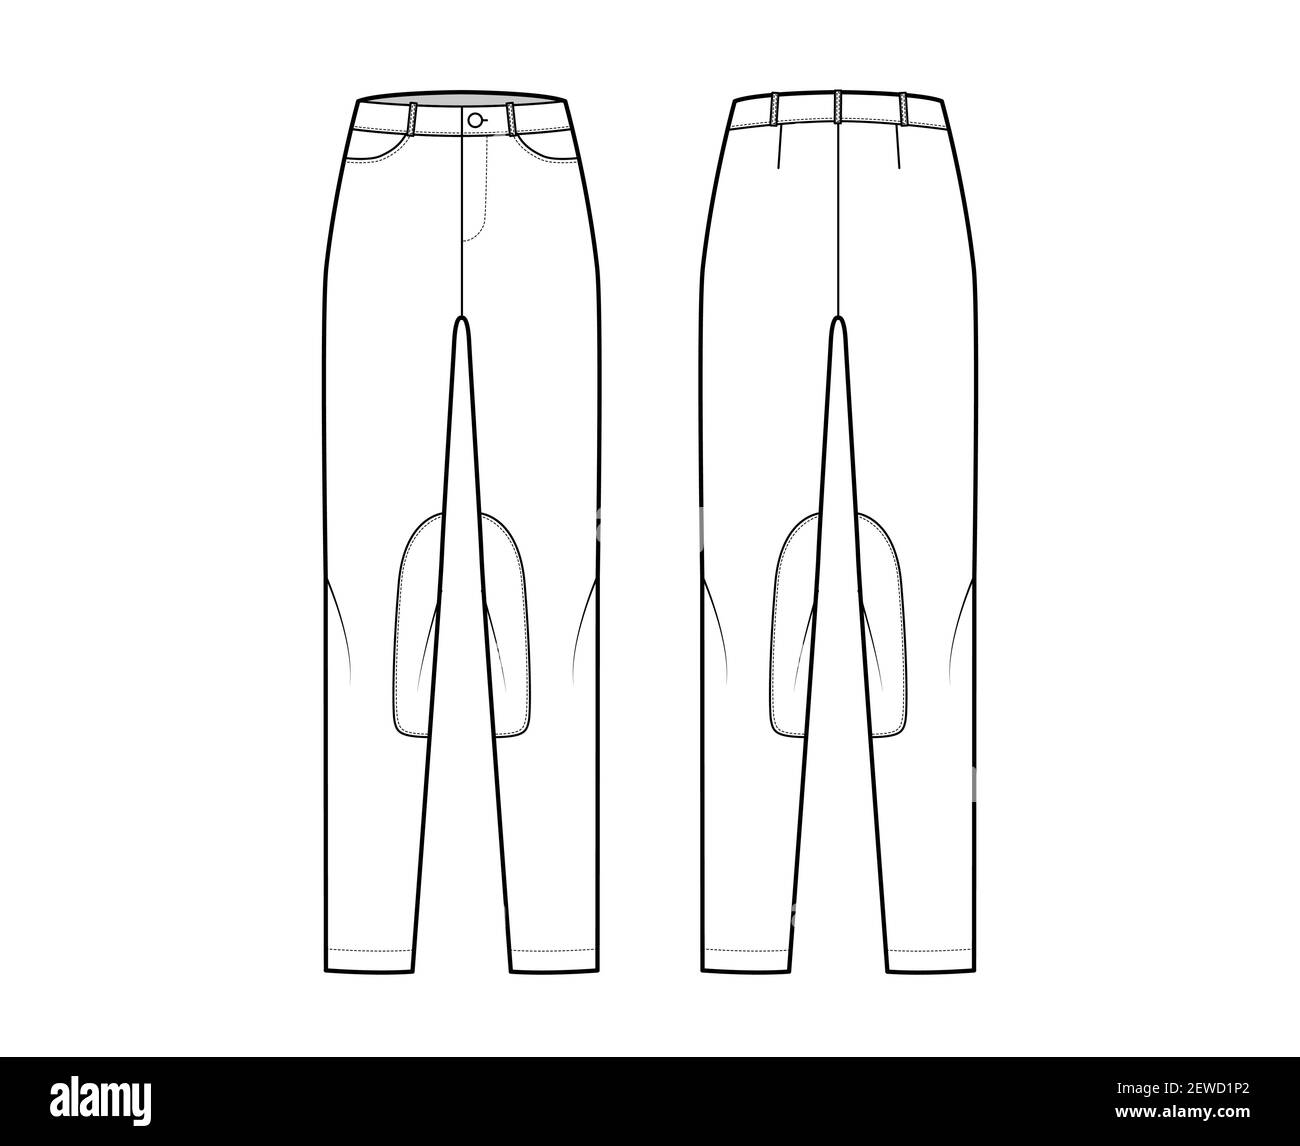 Ensemble de jeans Kentucky Jodhpurs pantalons denim illustration technique de la mode avec taille basse, taille, passants de ceinture, longueurs complètes. Modèle de vêtement plat à l'avant dans le dos, style blanc. Femmes, maquette de CAO unisex Illustration de Vecteur